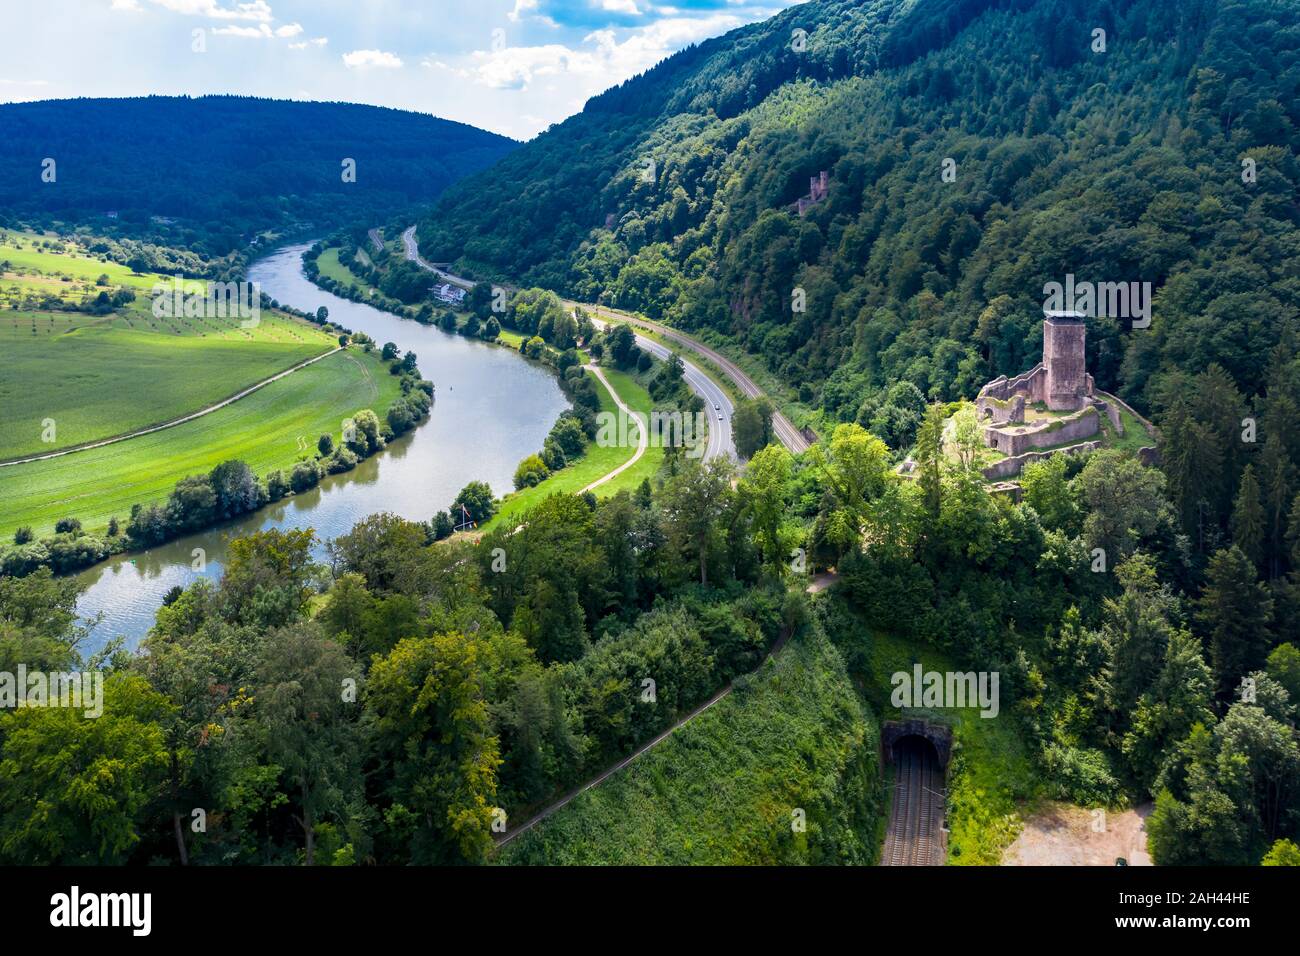 Alemania, Baden-Wurttemberg, Neckarsteinach Hinterburg, vista aérea del castillo y el río Neckar Foto de stock